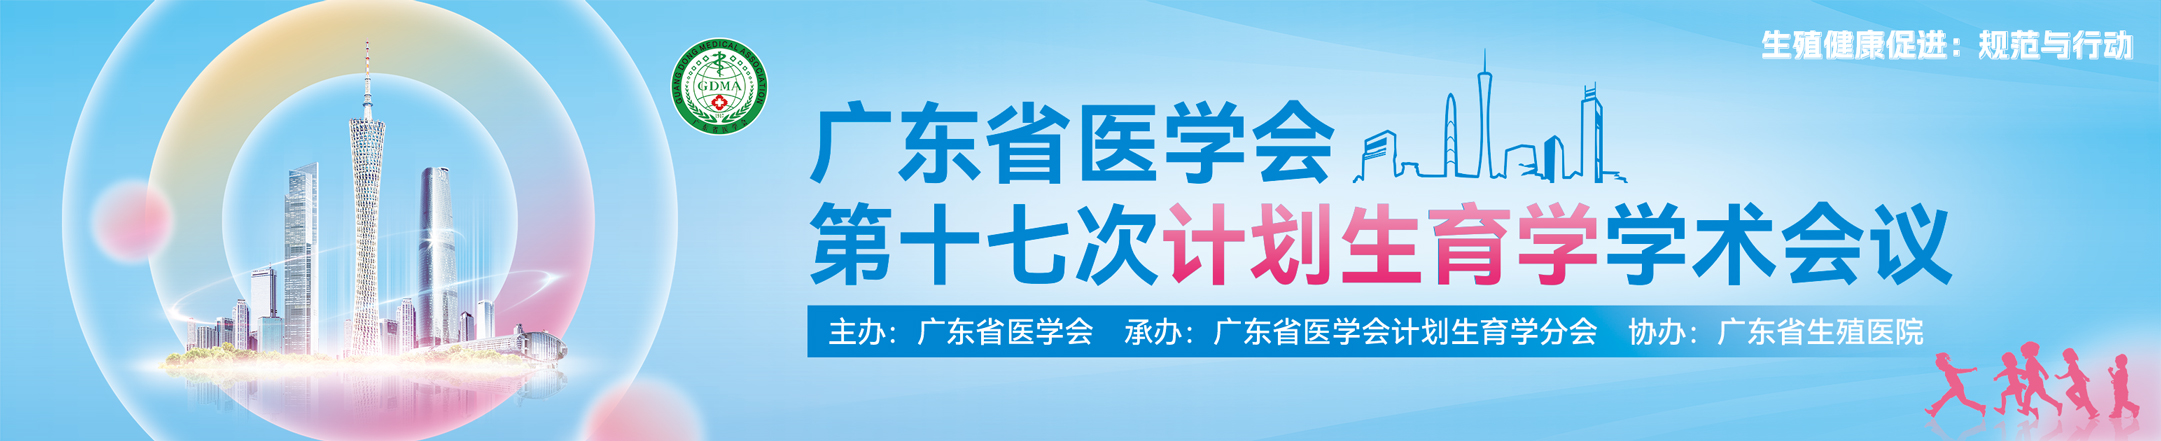 广东省医学会第十七次计划生育学学术会议